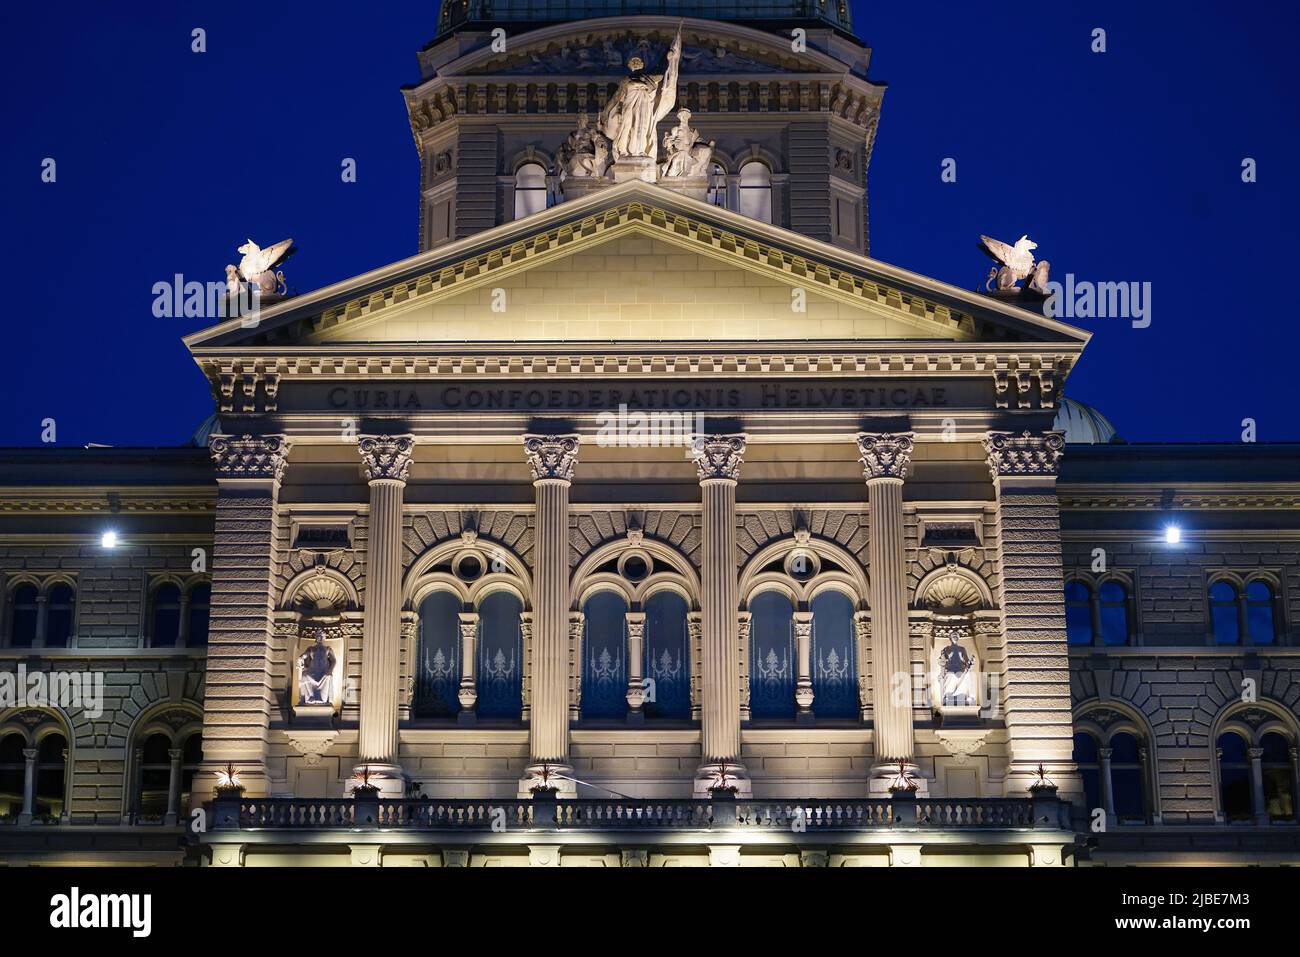 Vue de nuit sur le Parlement suisse. Berne, Suisse - juin 2022 Banque D'Images